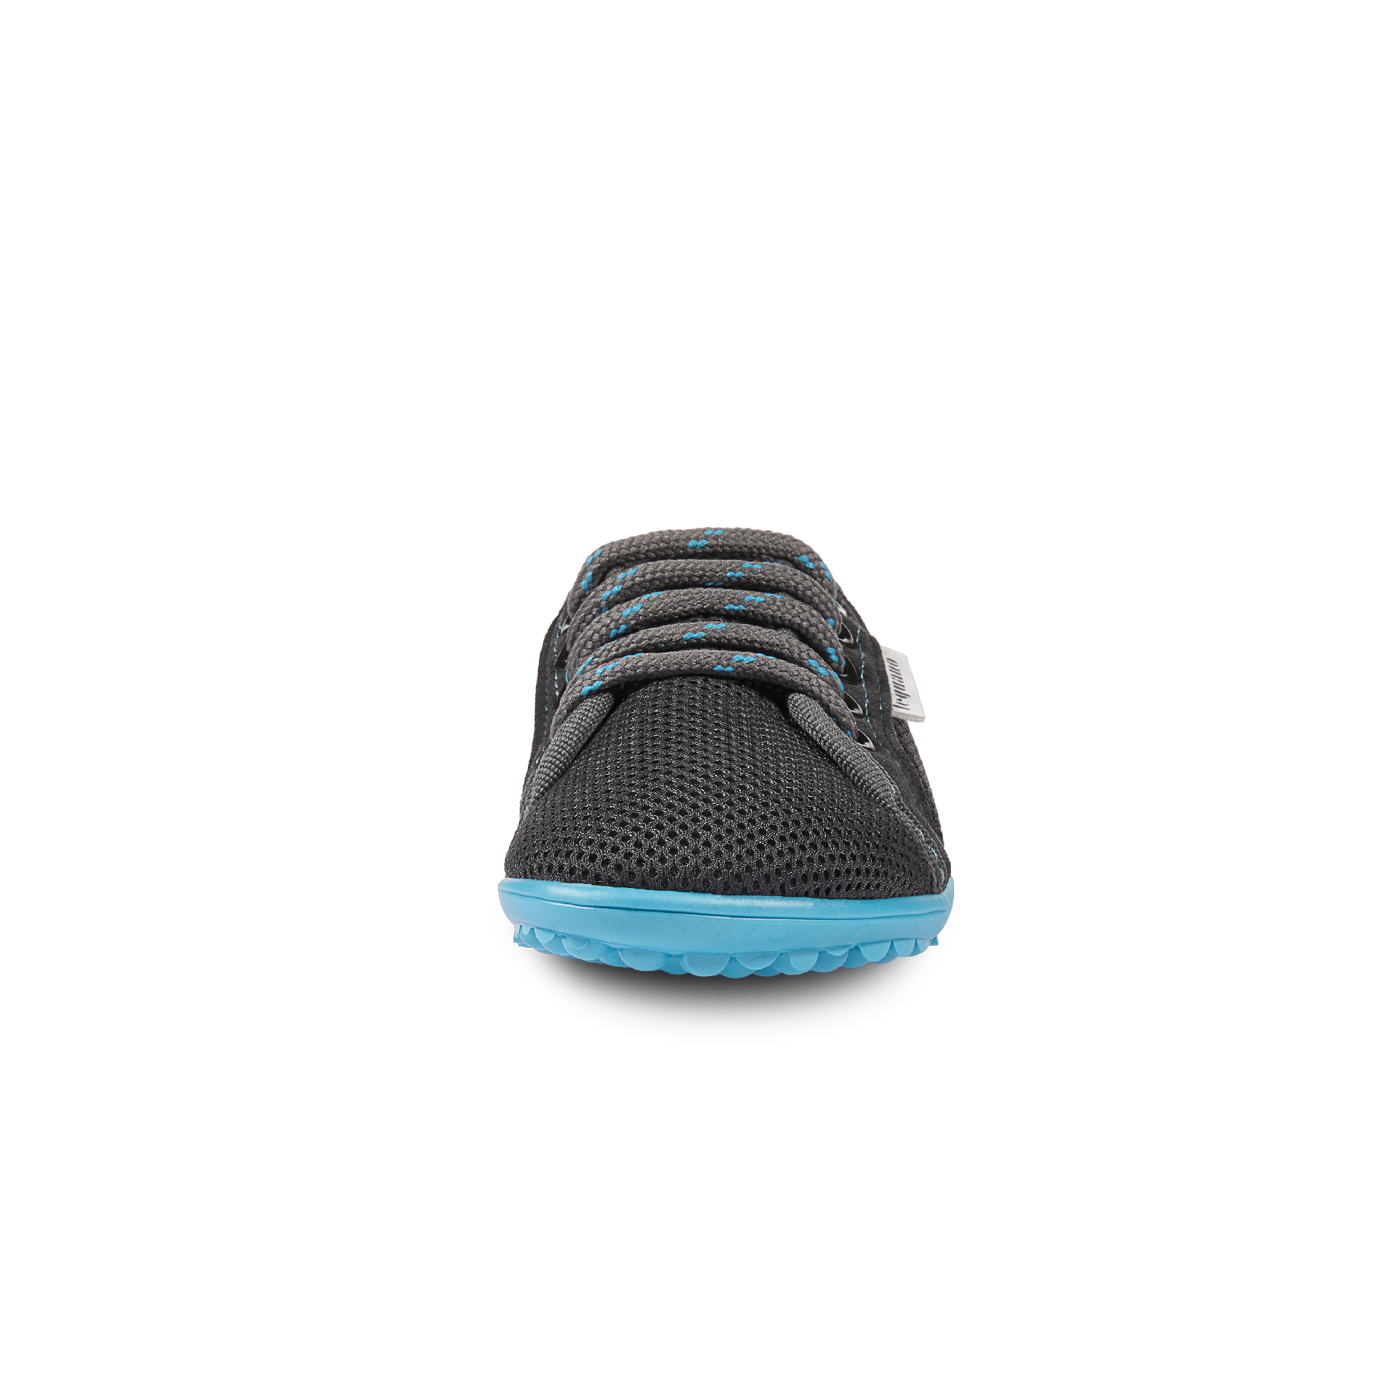 Mærkbare Aktiv barfods sneakers til børn i farven anthracite / blue, forfra